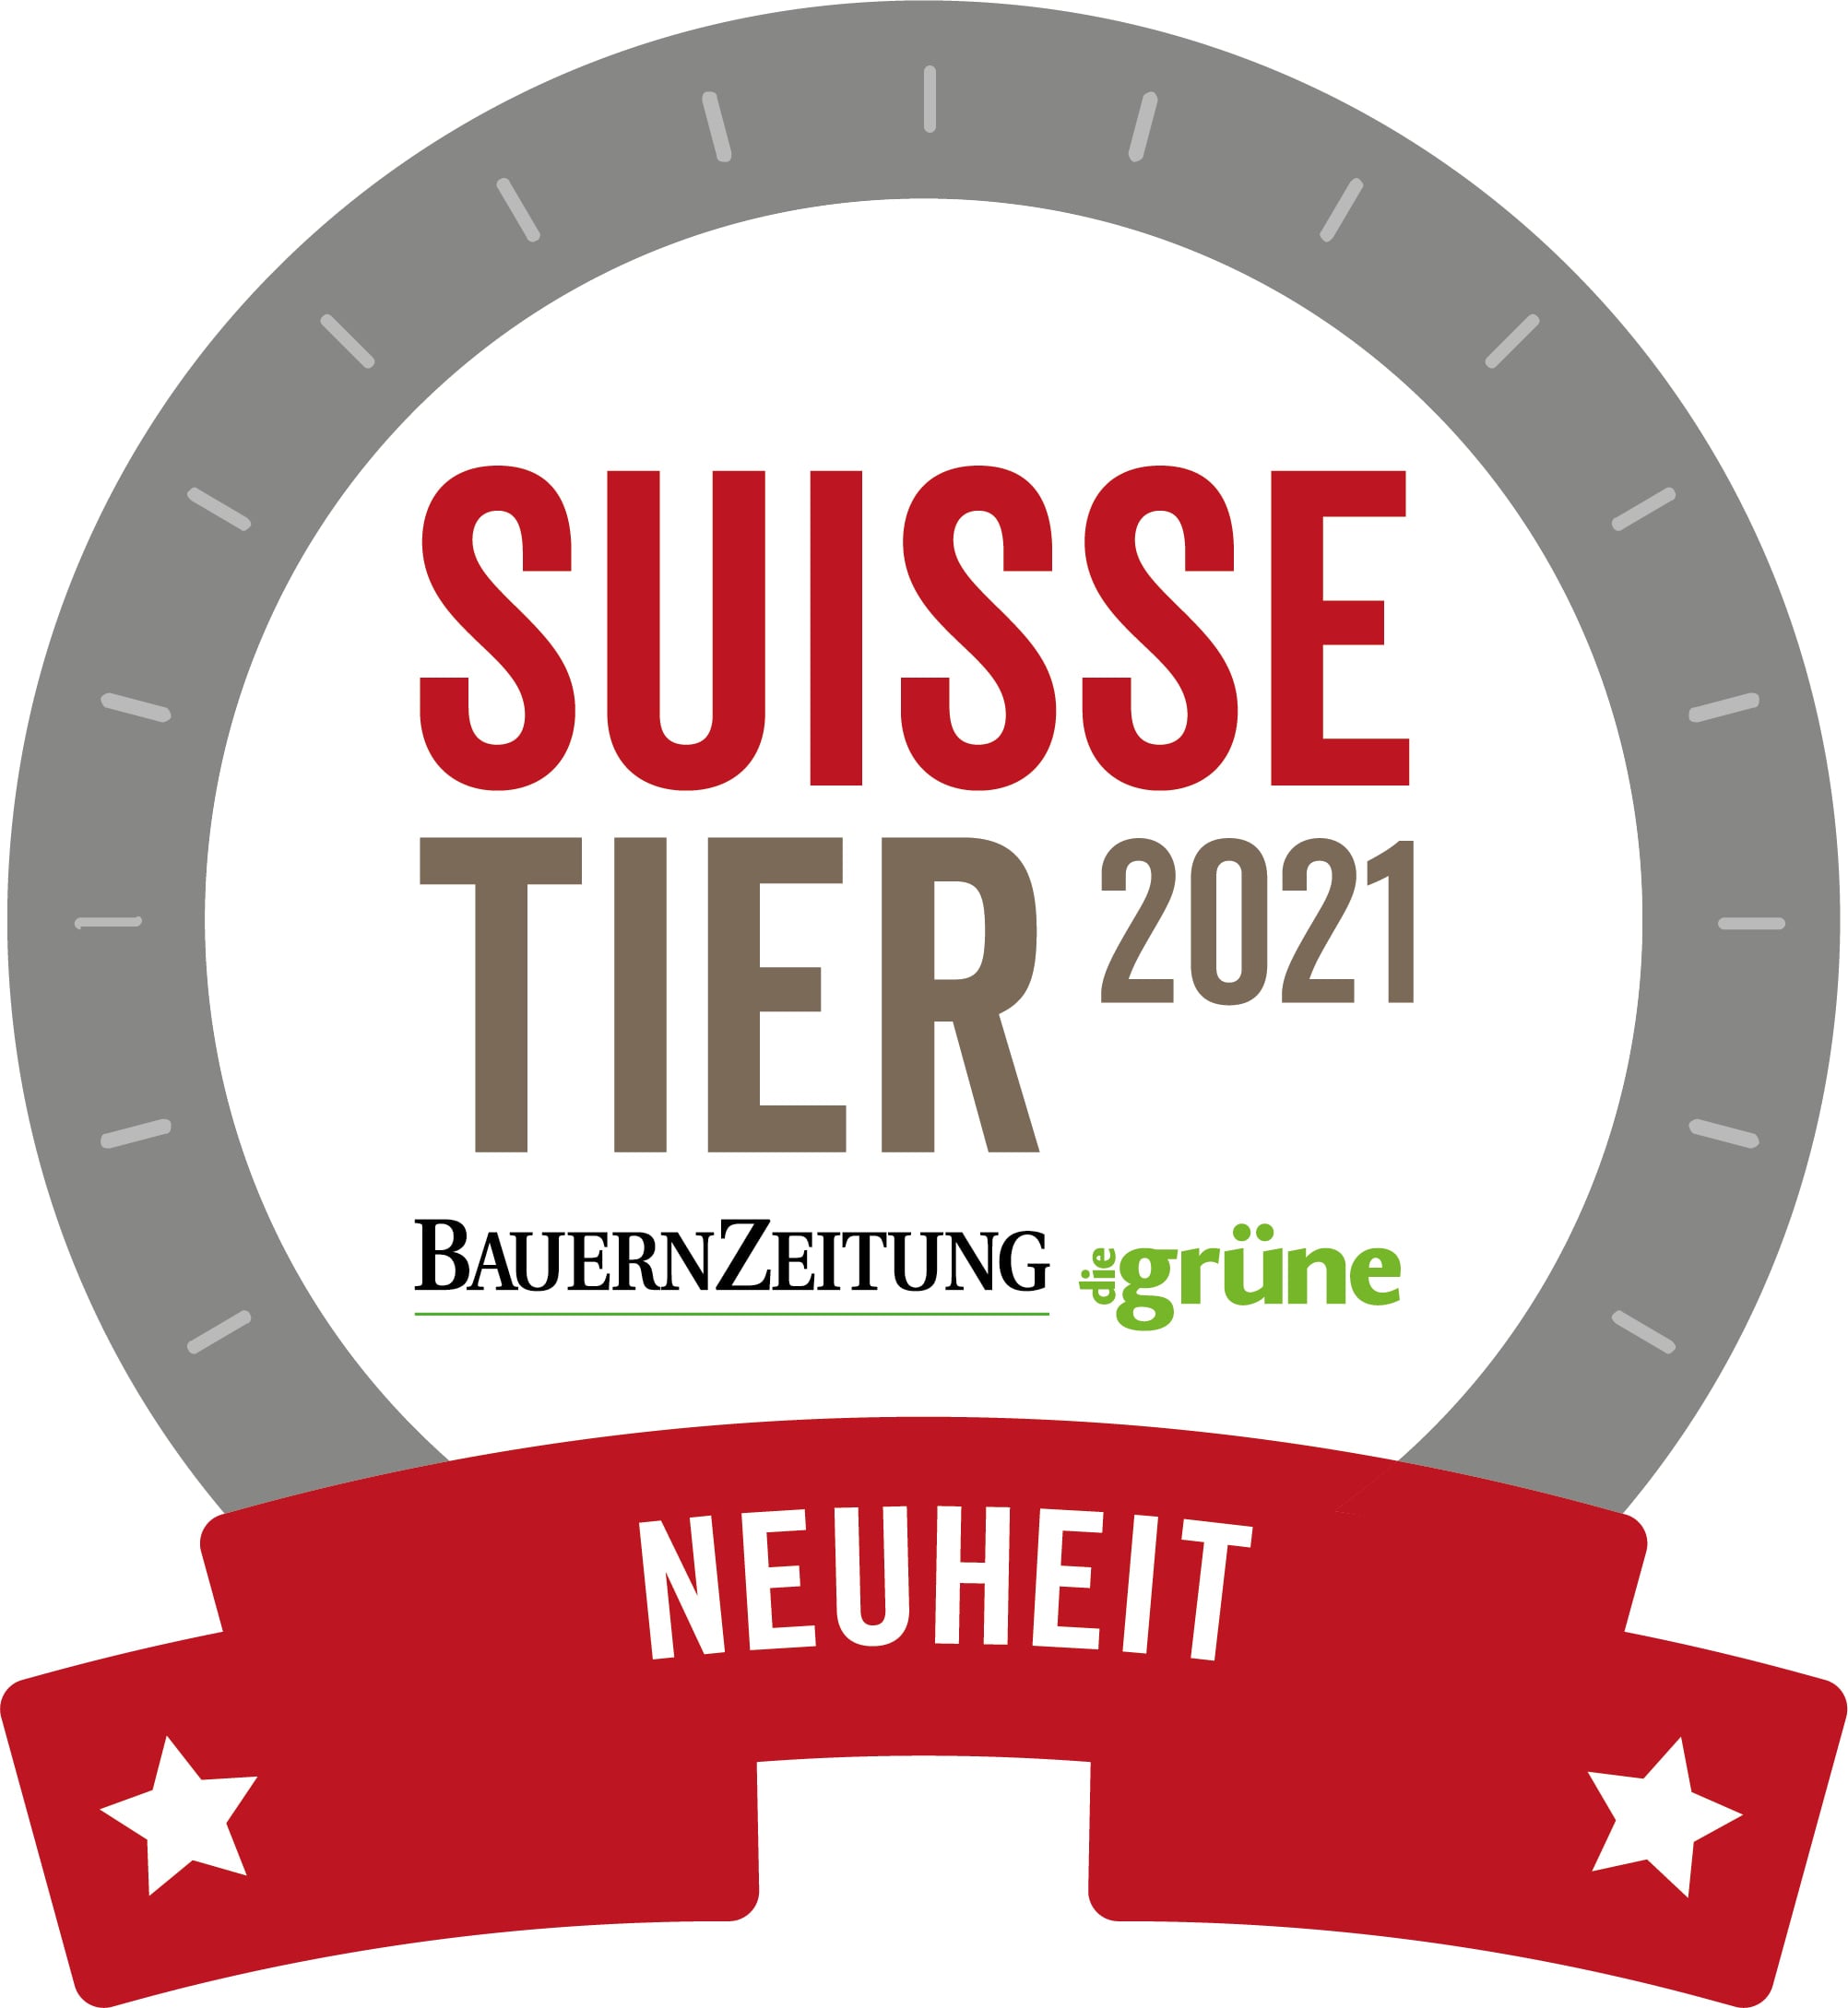 Lely Sphere – Suisse Tier 2021 Neuheit